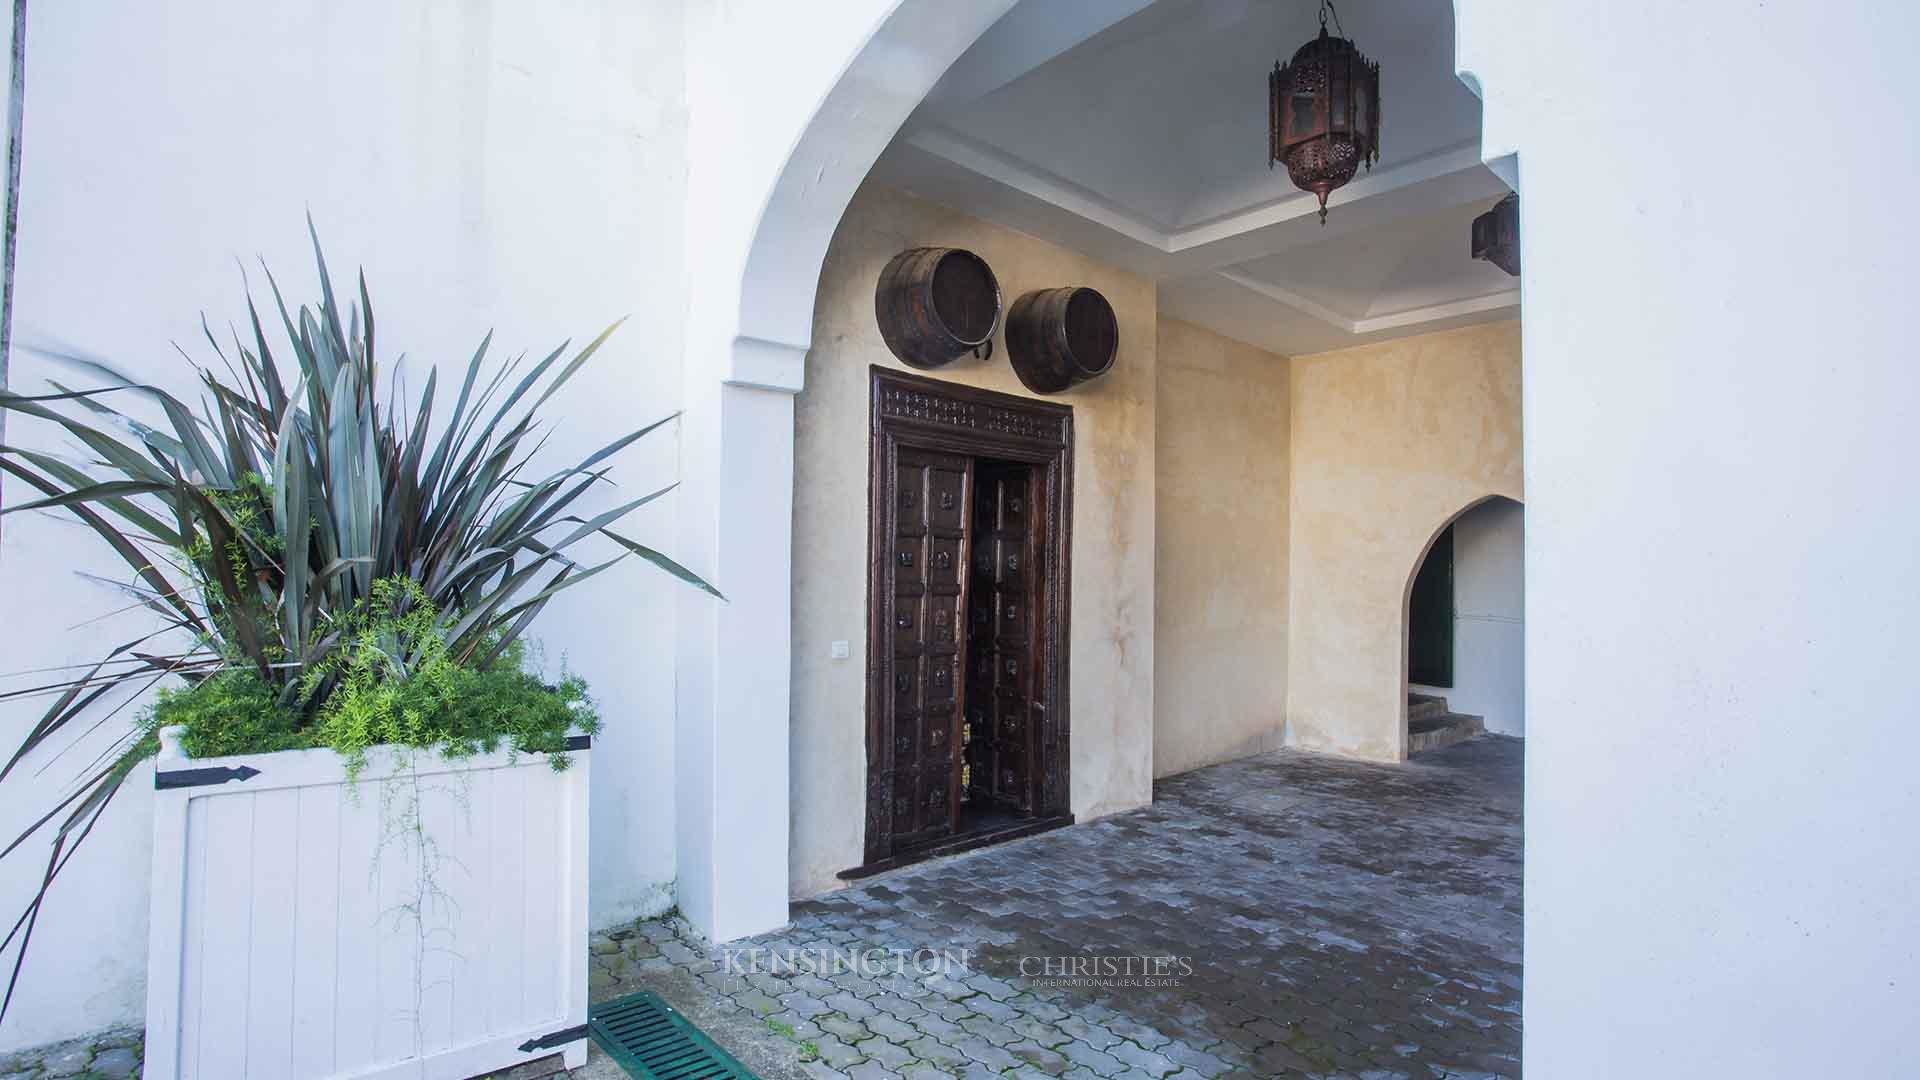 Villa Malaga in Tangier, Morocco